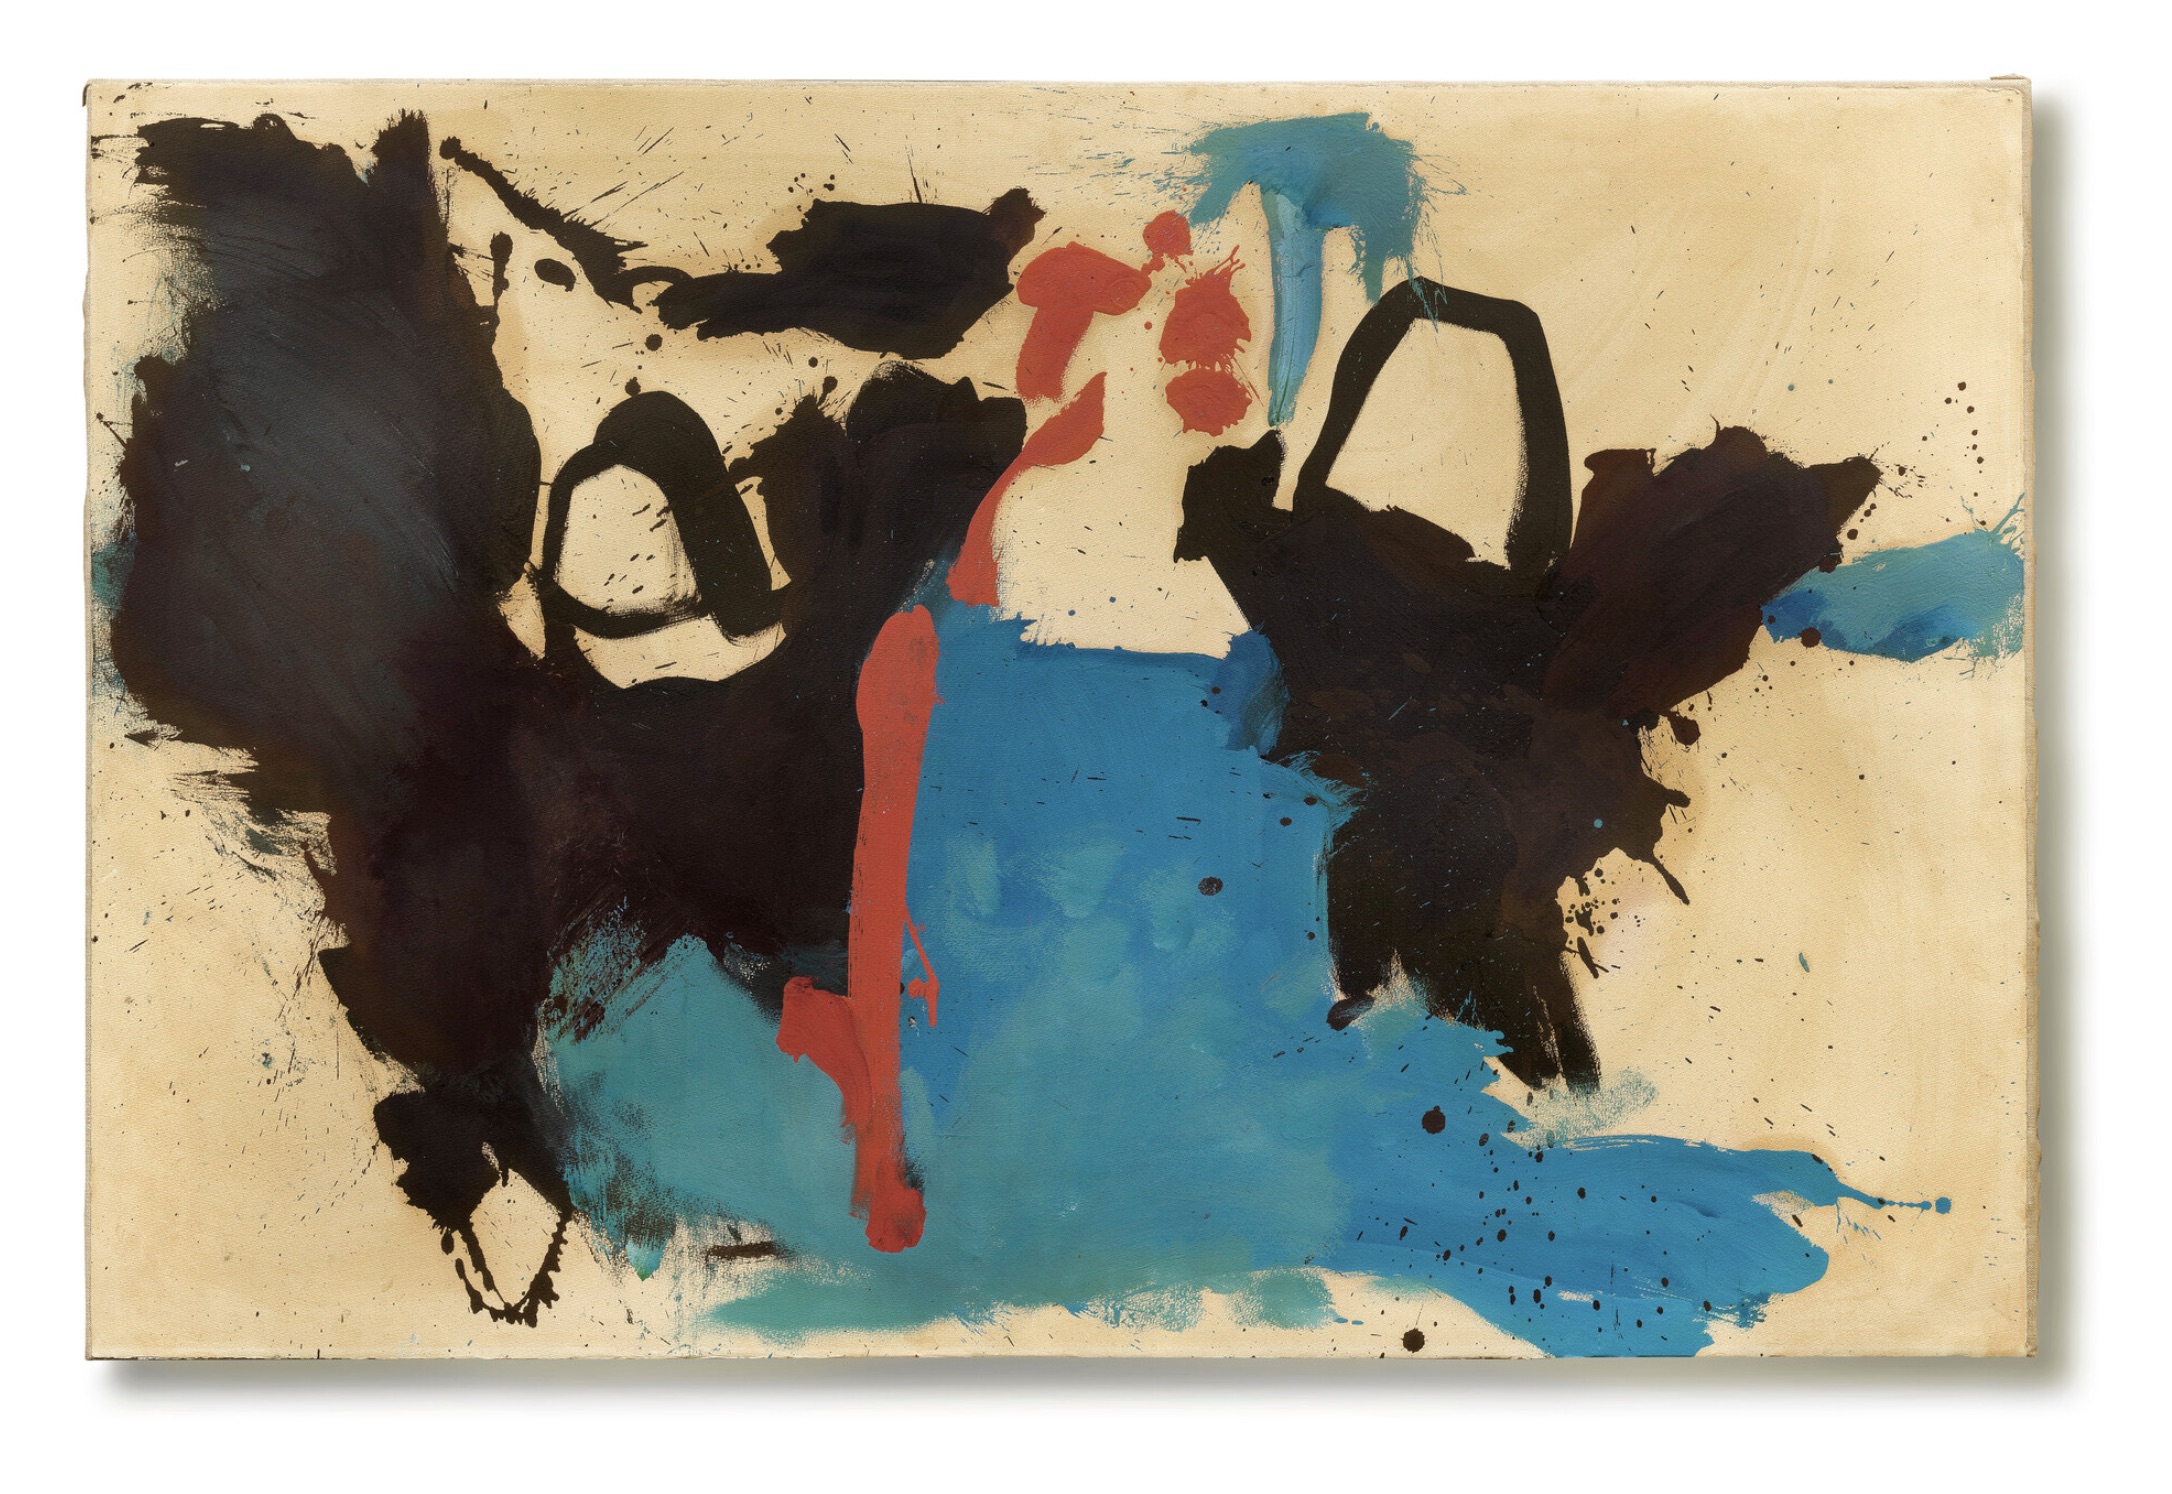 Helen Frankenthaler (1928-2011), Untitled